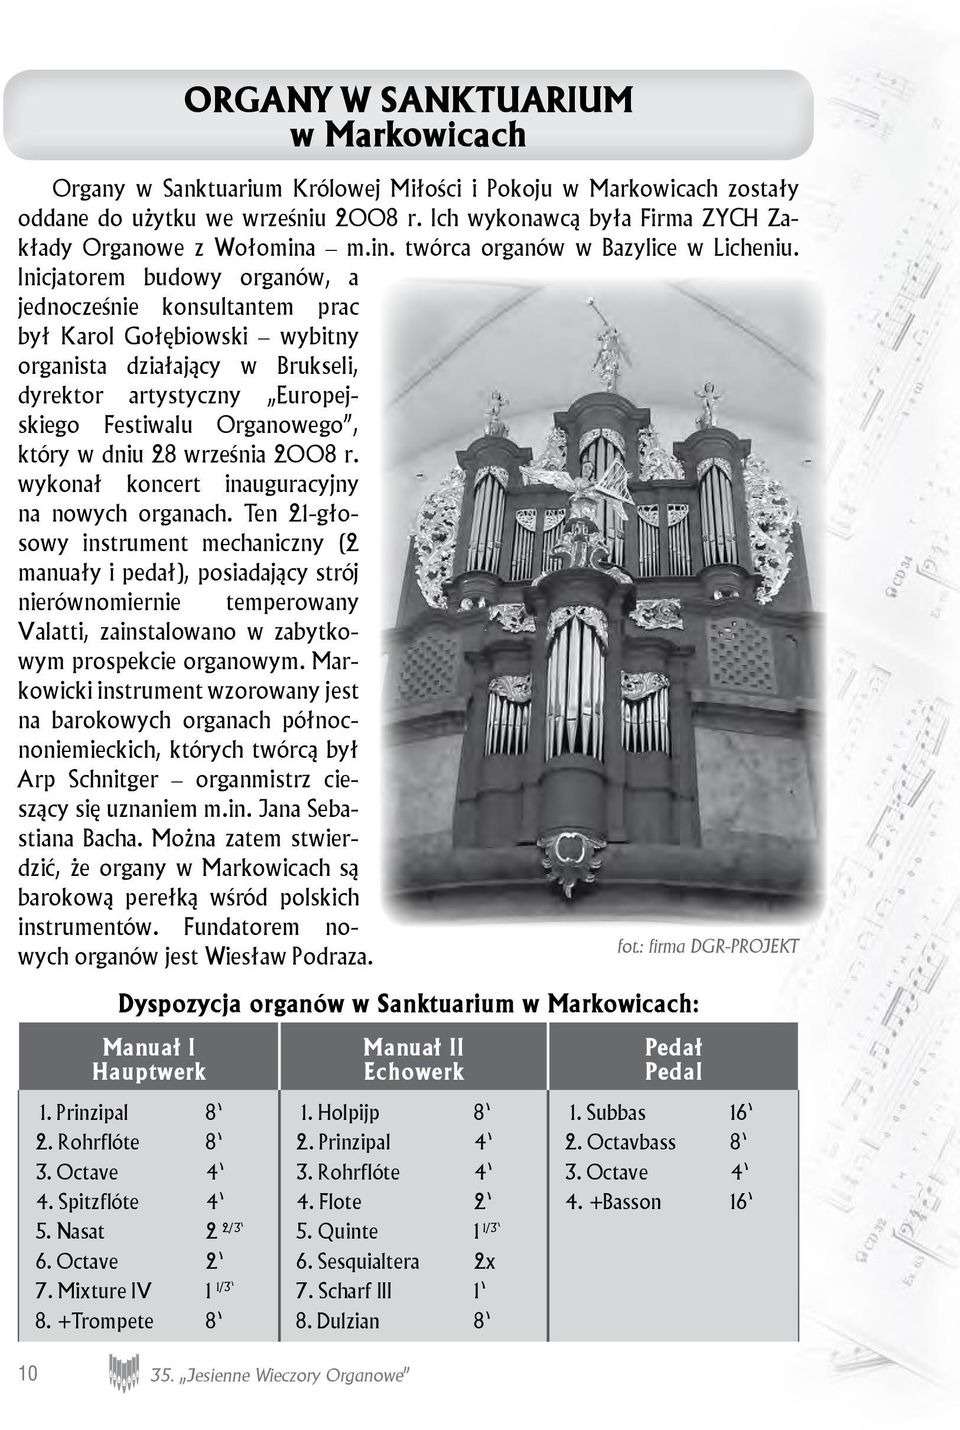 Inicjatorem budowy organów, a jednocześnie konsultantem prac był Karol Gołębiowski wybitny organista działający w Brukseli, dyrektor artystyczny Europejskiego Festiwalu Organowego, który w dniu 28